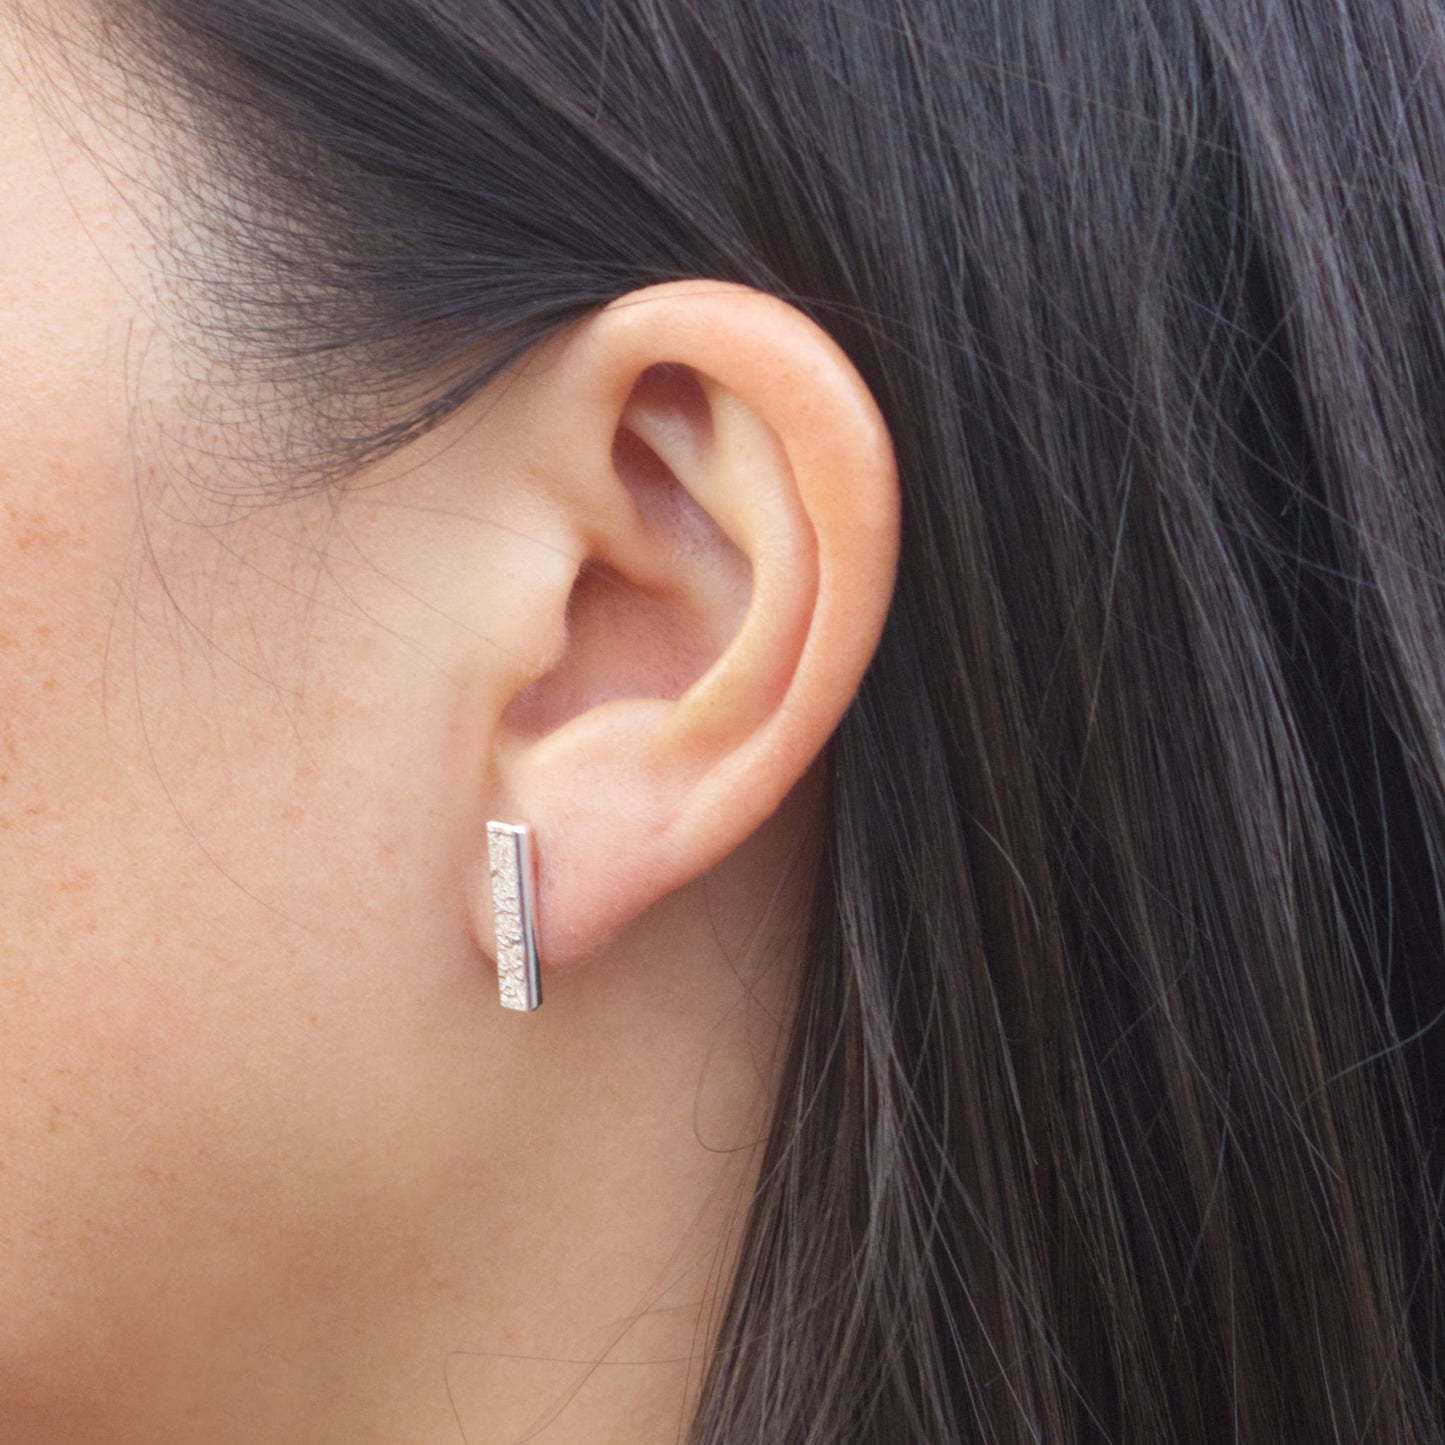 model wearing sterling silver textured bar earrings